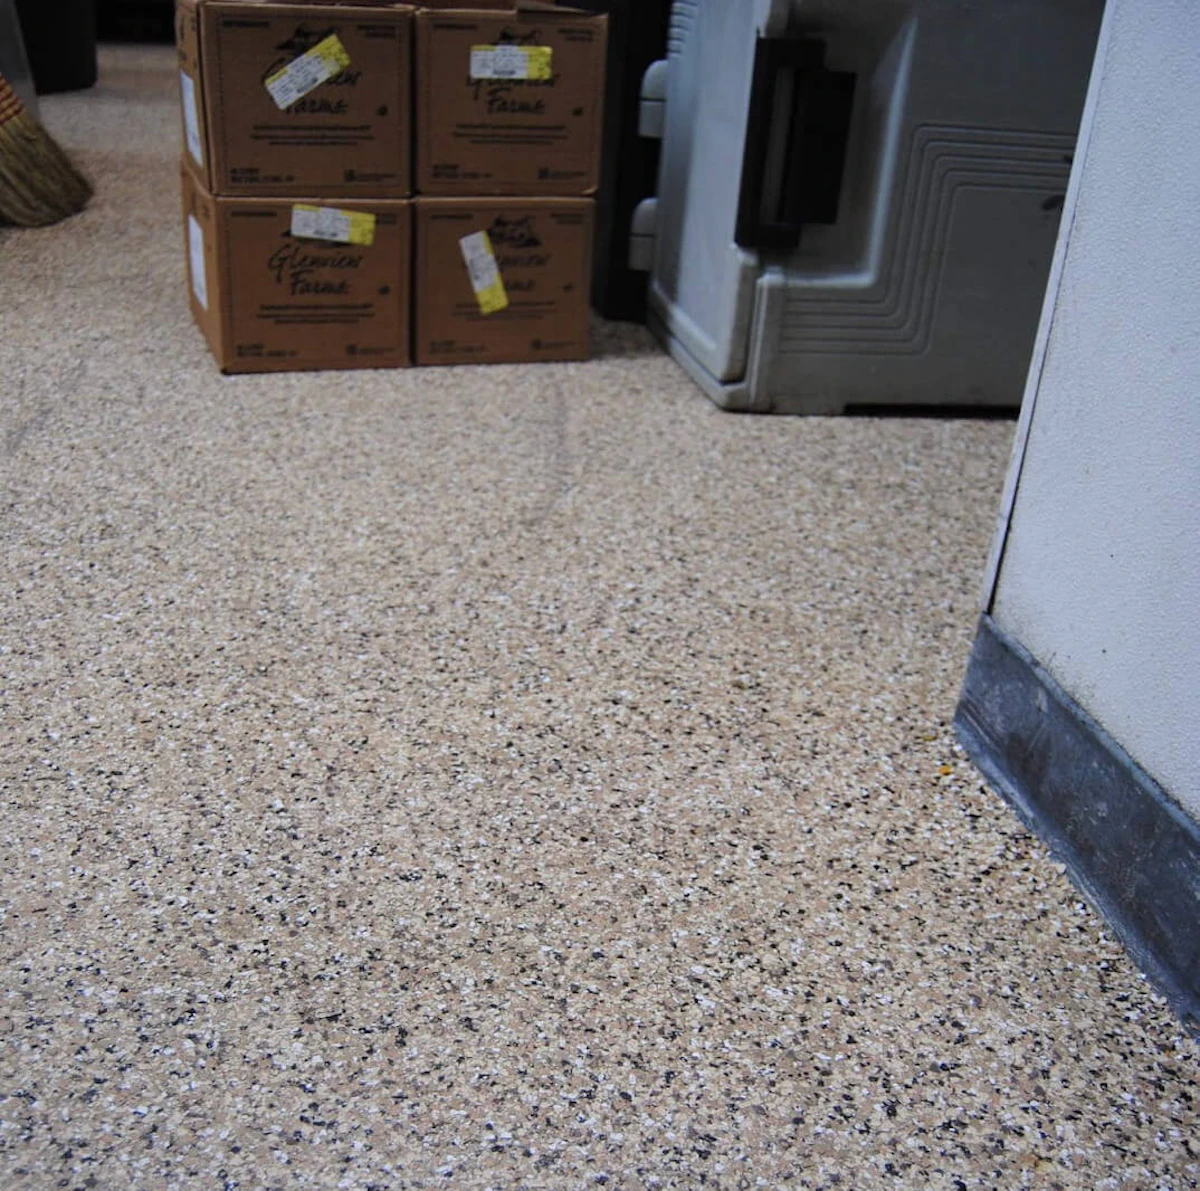 New Penntek floors in a facility.